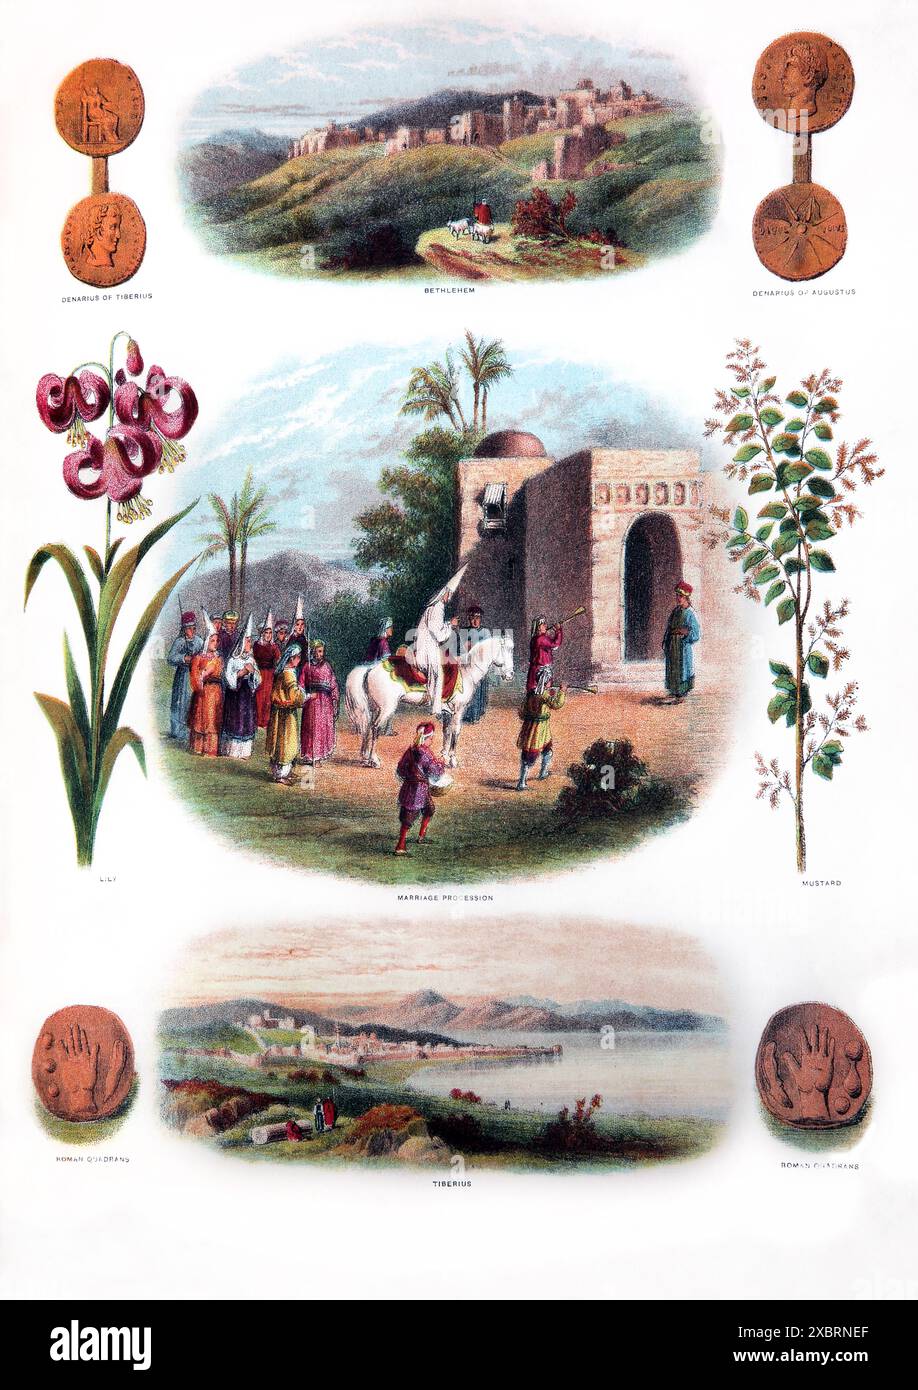 Pagina da Antica famiglia autointerpretante di Brown del XIX secolo con illustrazioni del nuovo Testamento di Processione matrimoniale, Tiberio, Betlemme, Qu romano Foto Stock